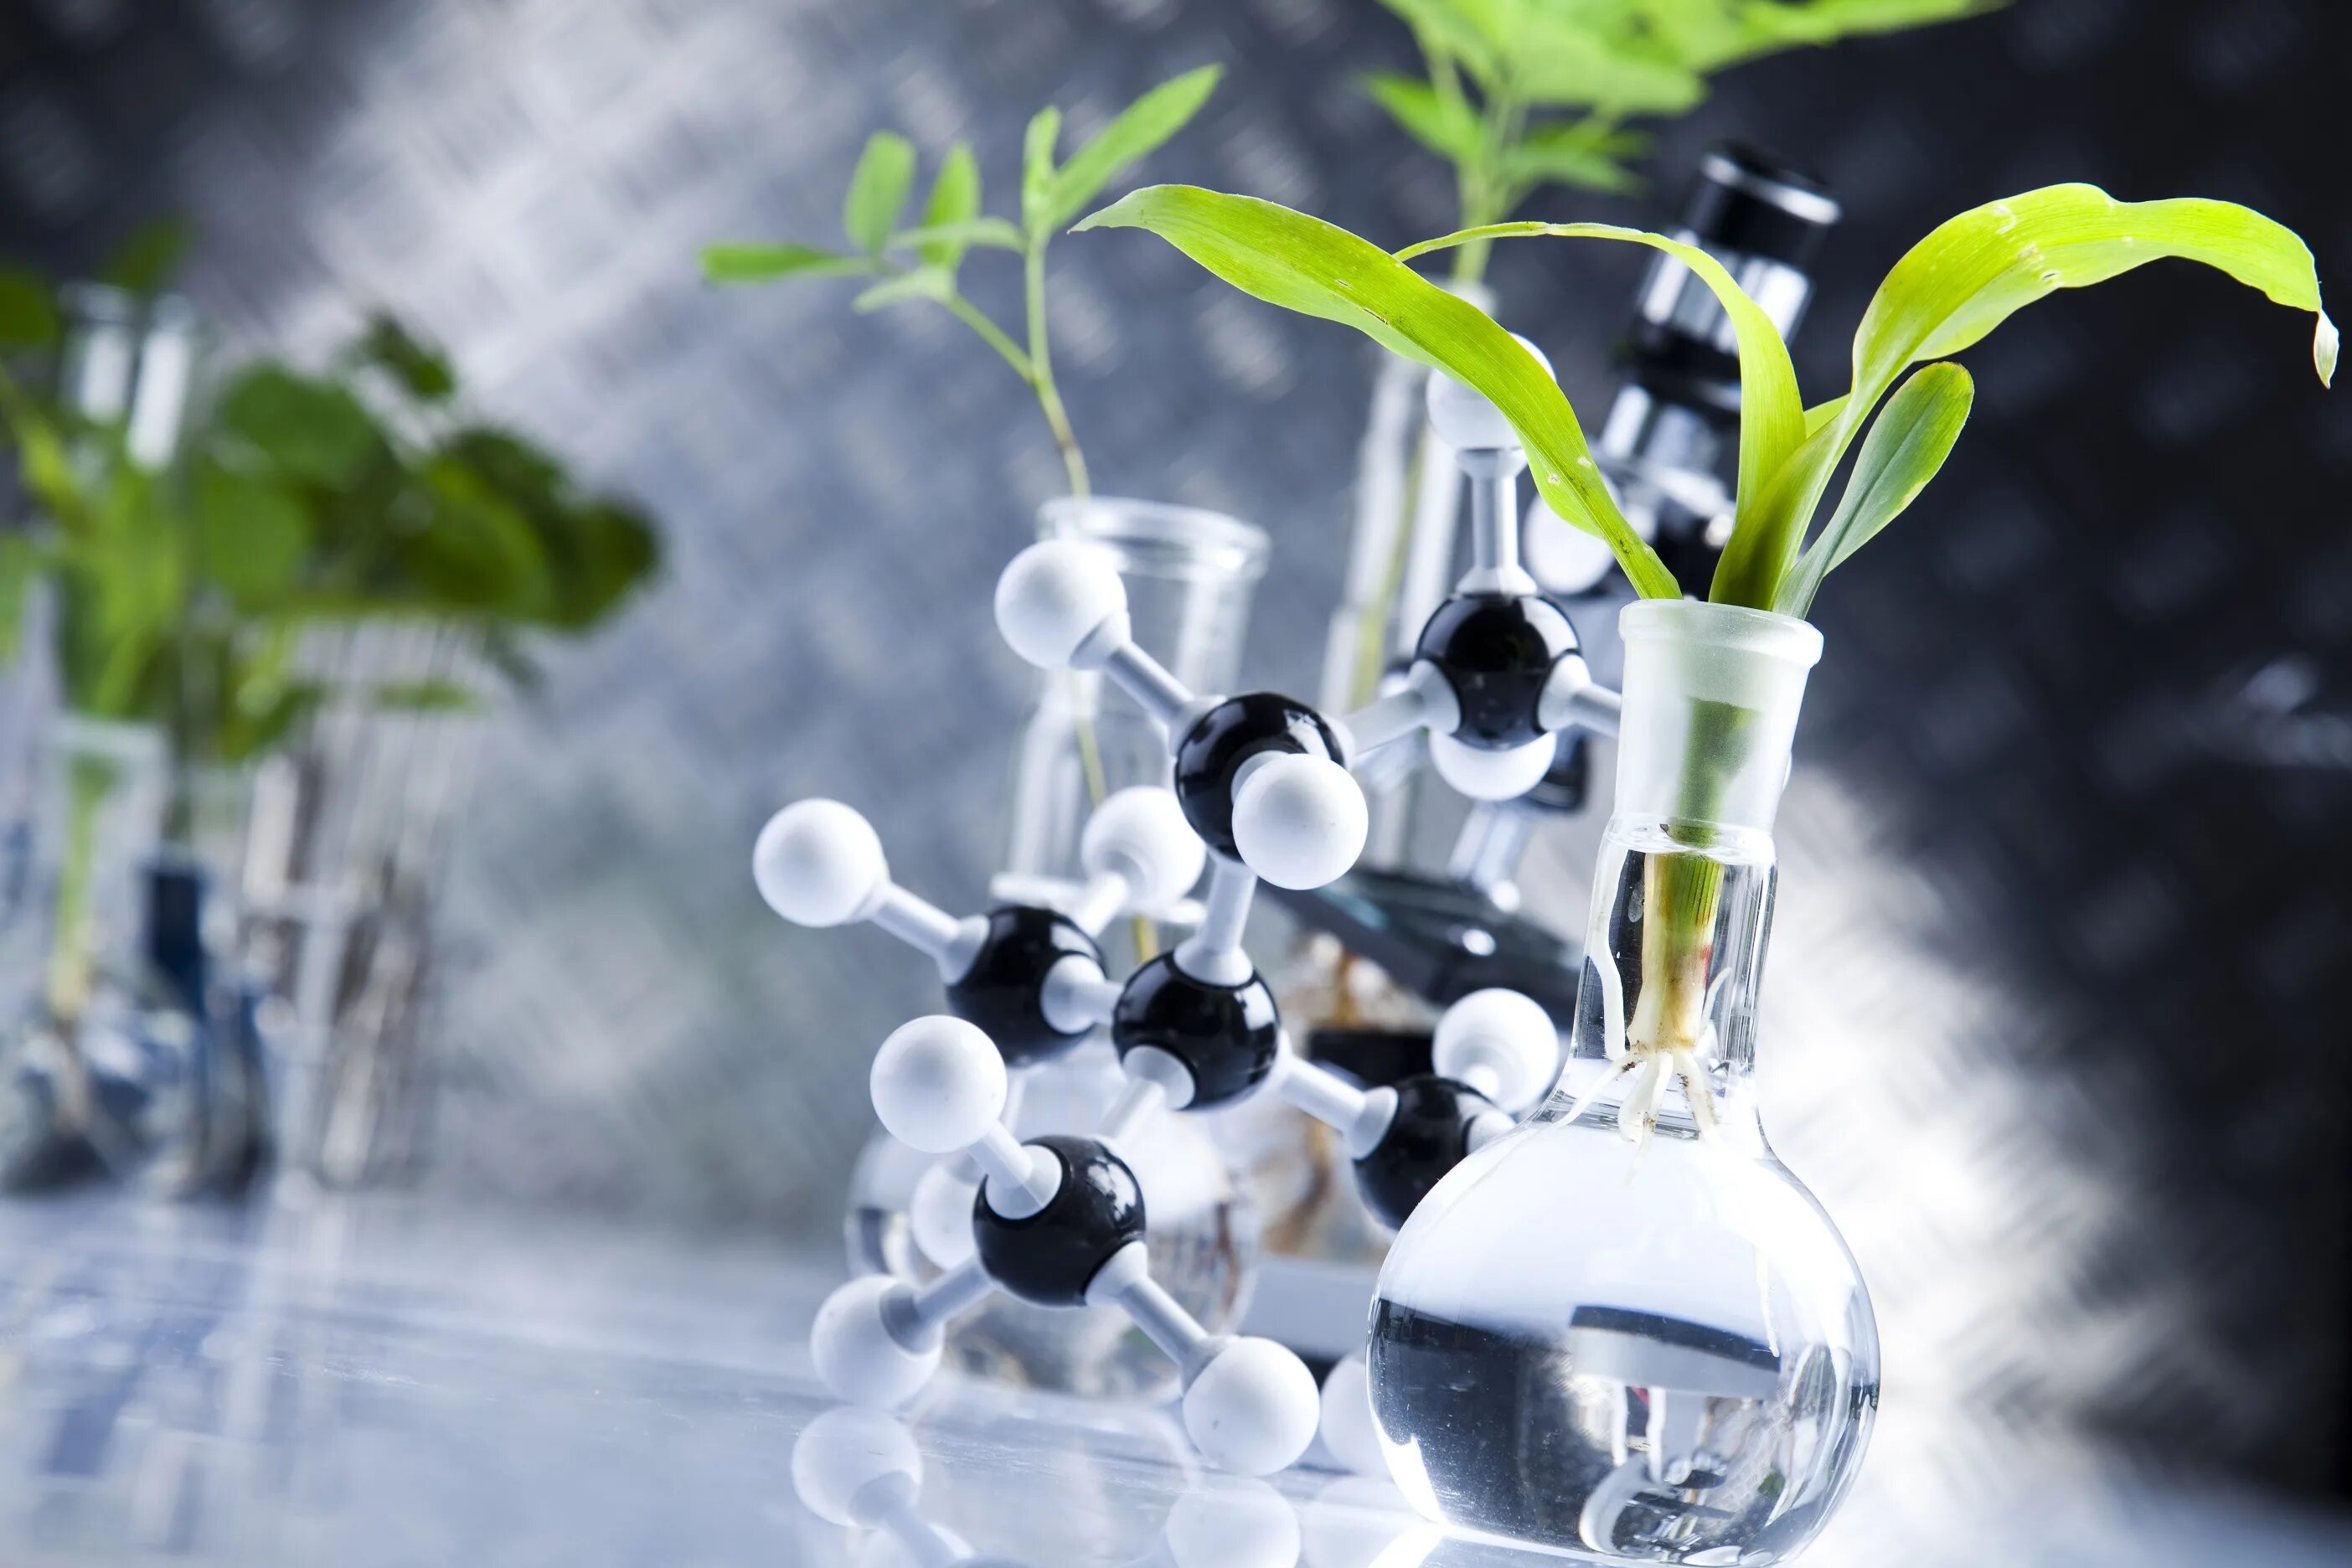 Вода химия и экология. Растения в пробирках. Лаборатория растений. Химические вещества растений. Биотехнология растений.